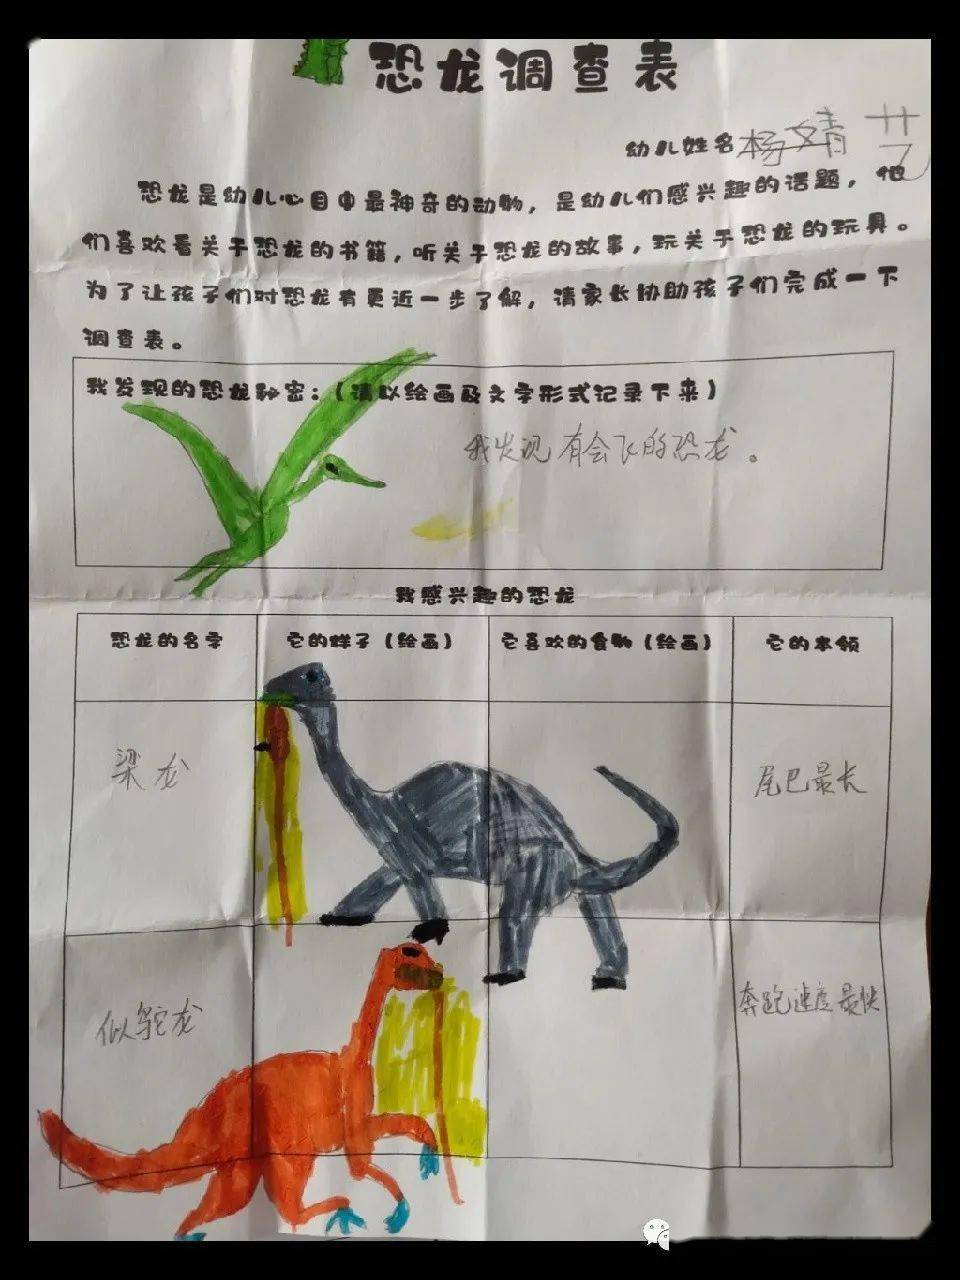 幼儿园恐龙调查表格图片